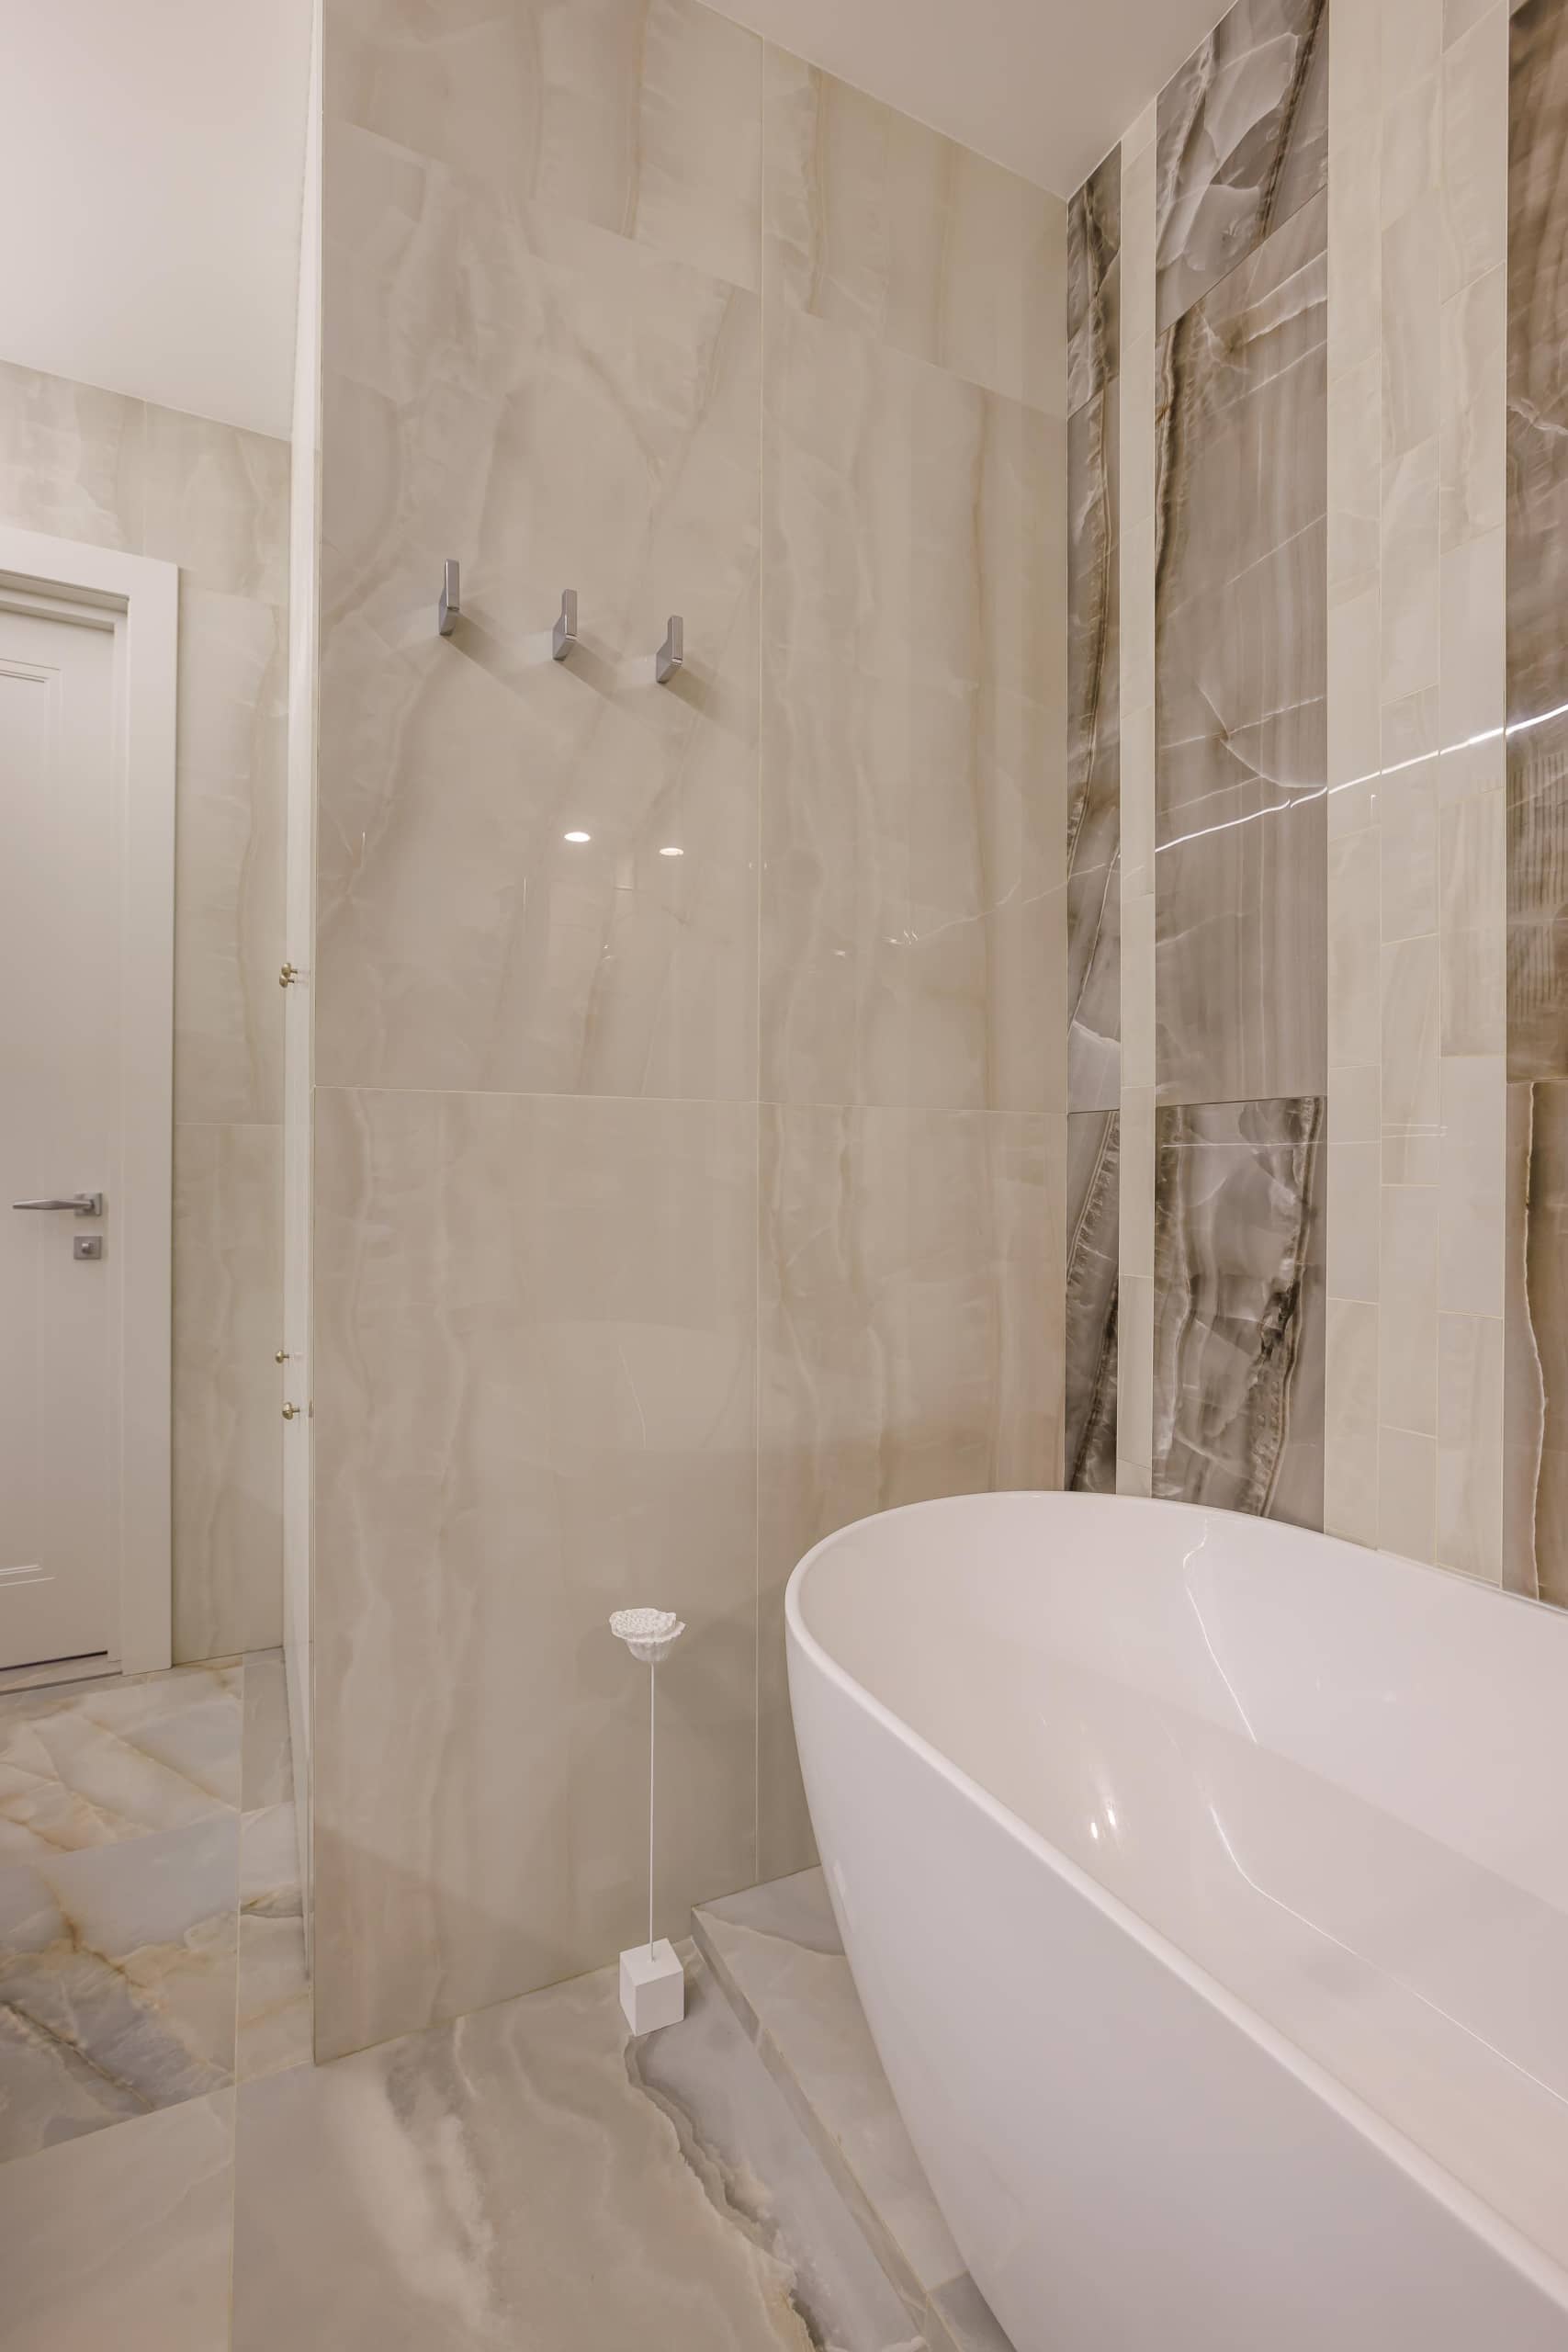 Оформление интерьера ванной комнаты в белый цвет. Фото № 71659.